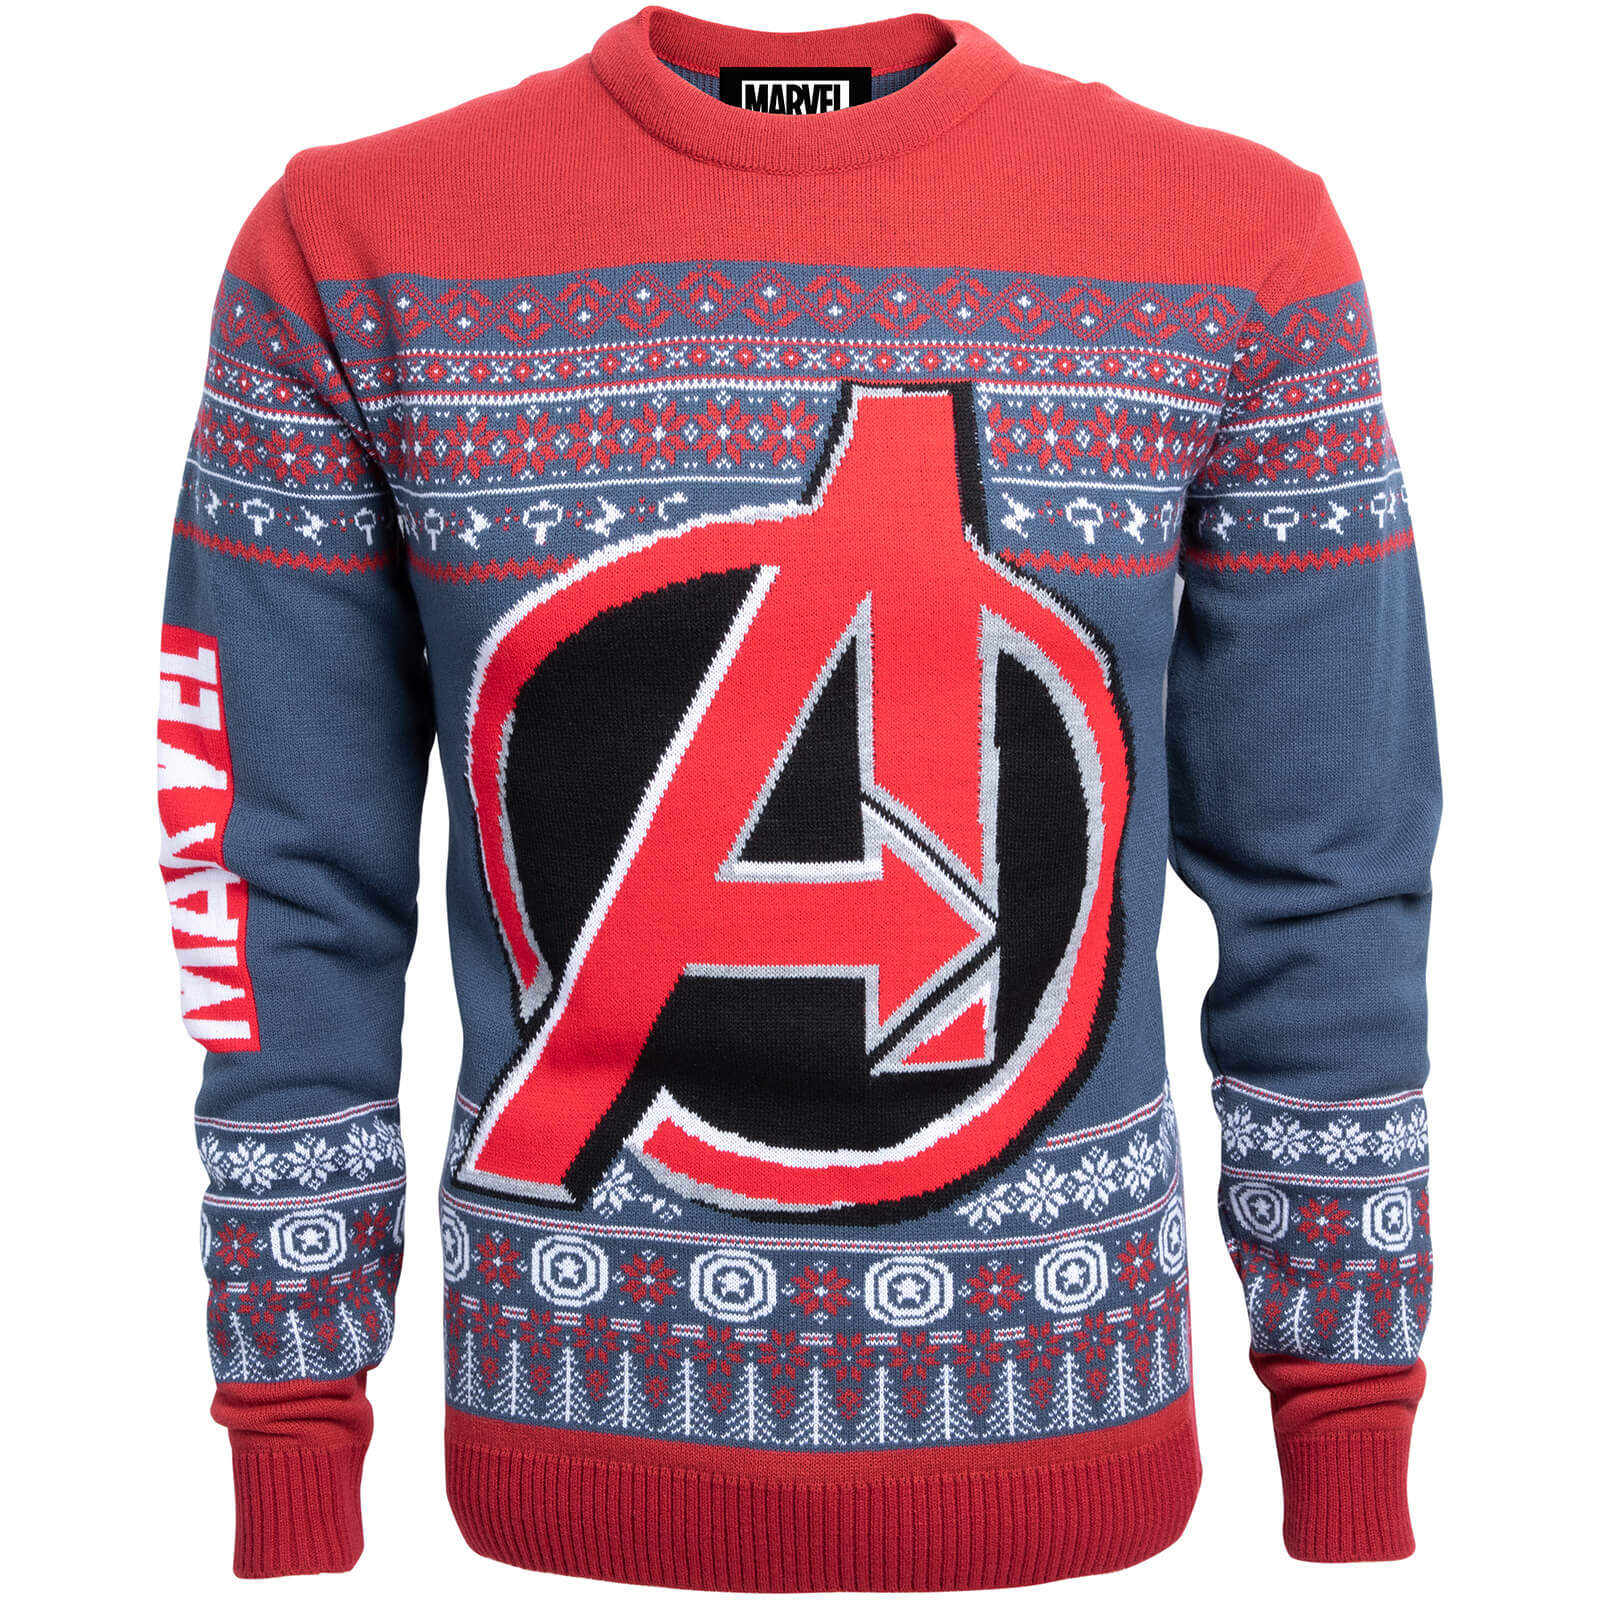 Marvel Avengers Kids Christmas Knitted Jumper - Navy - S